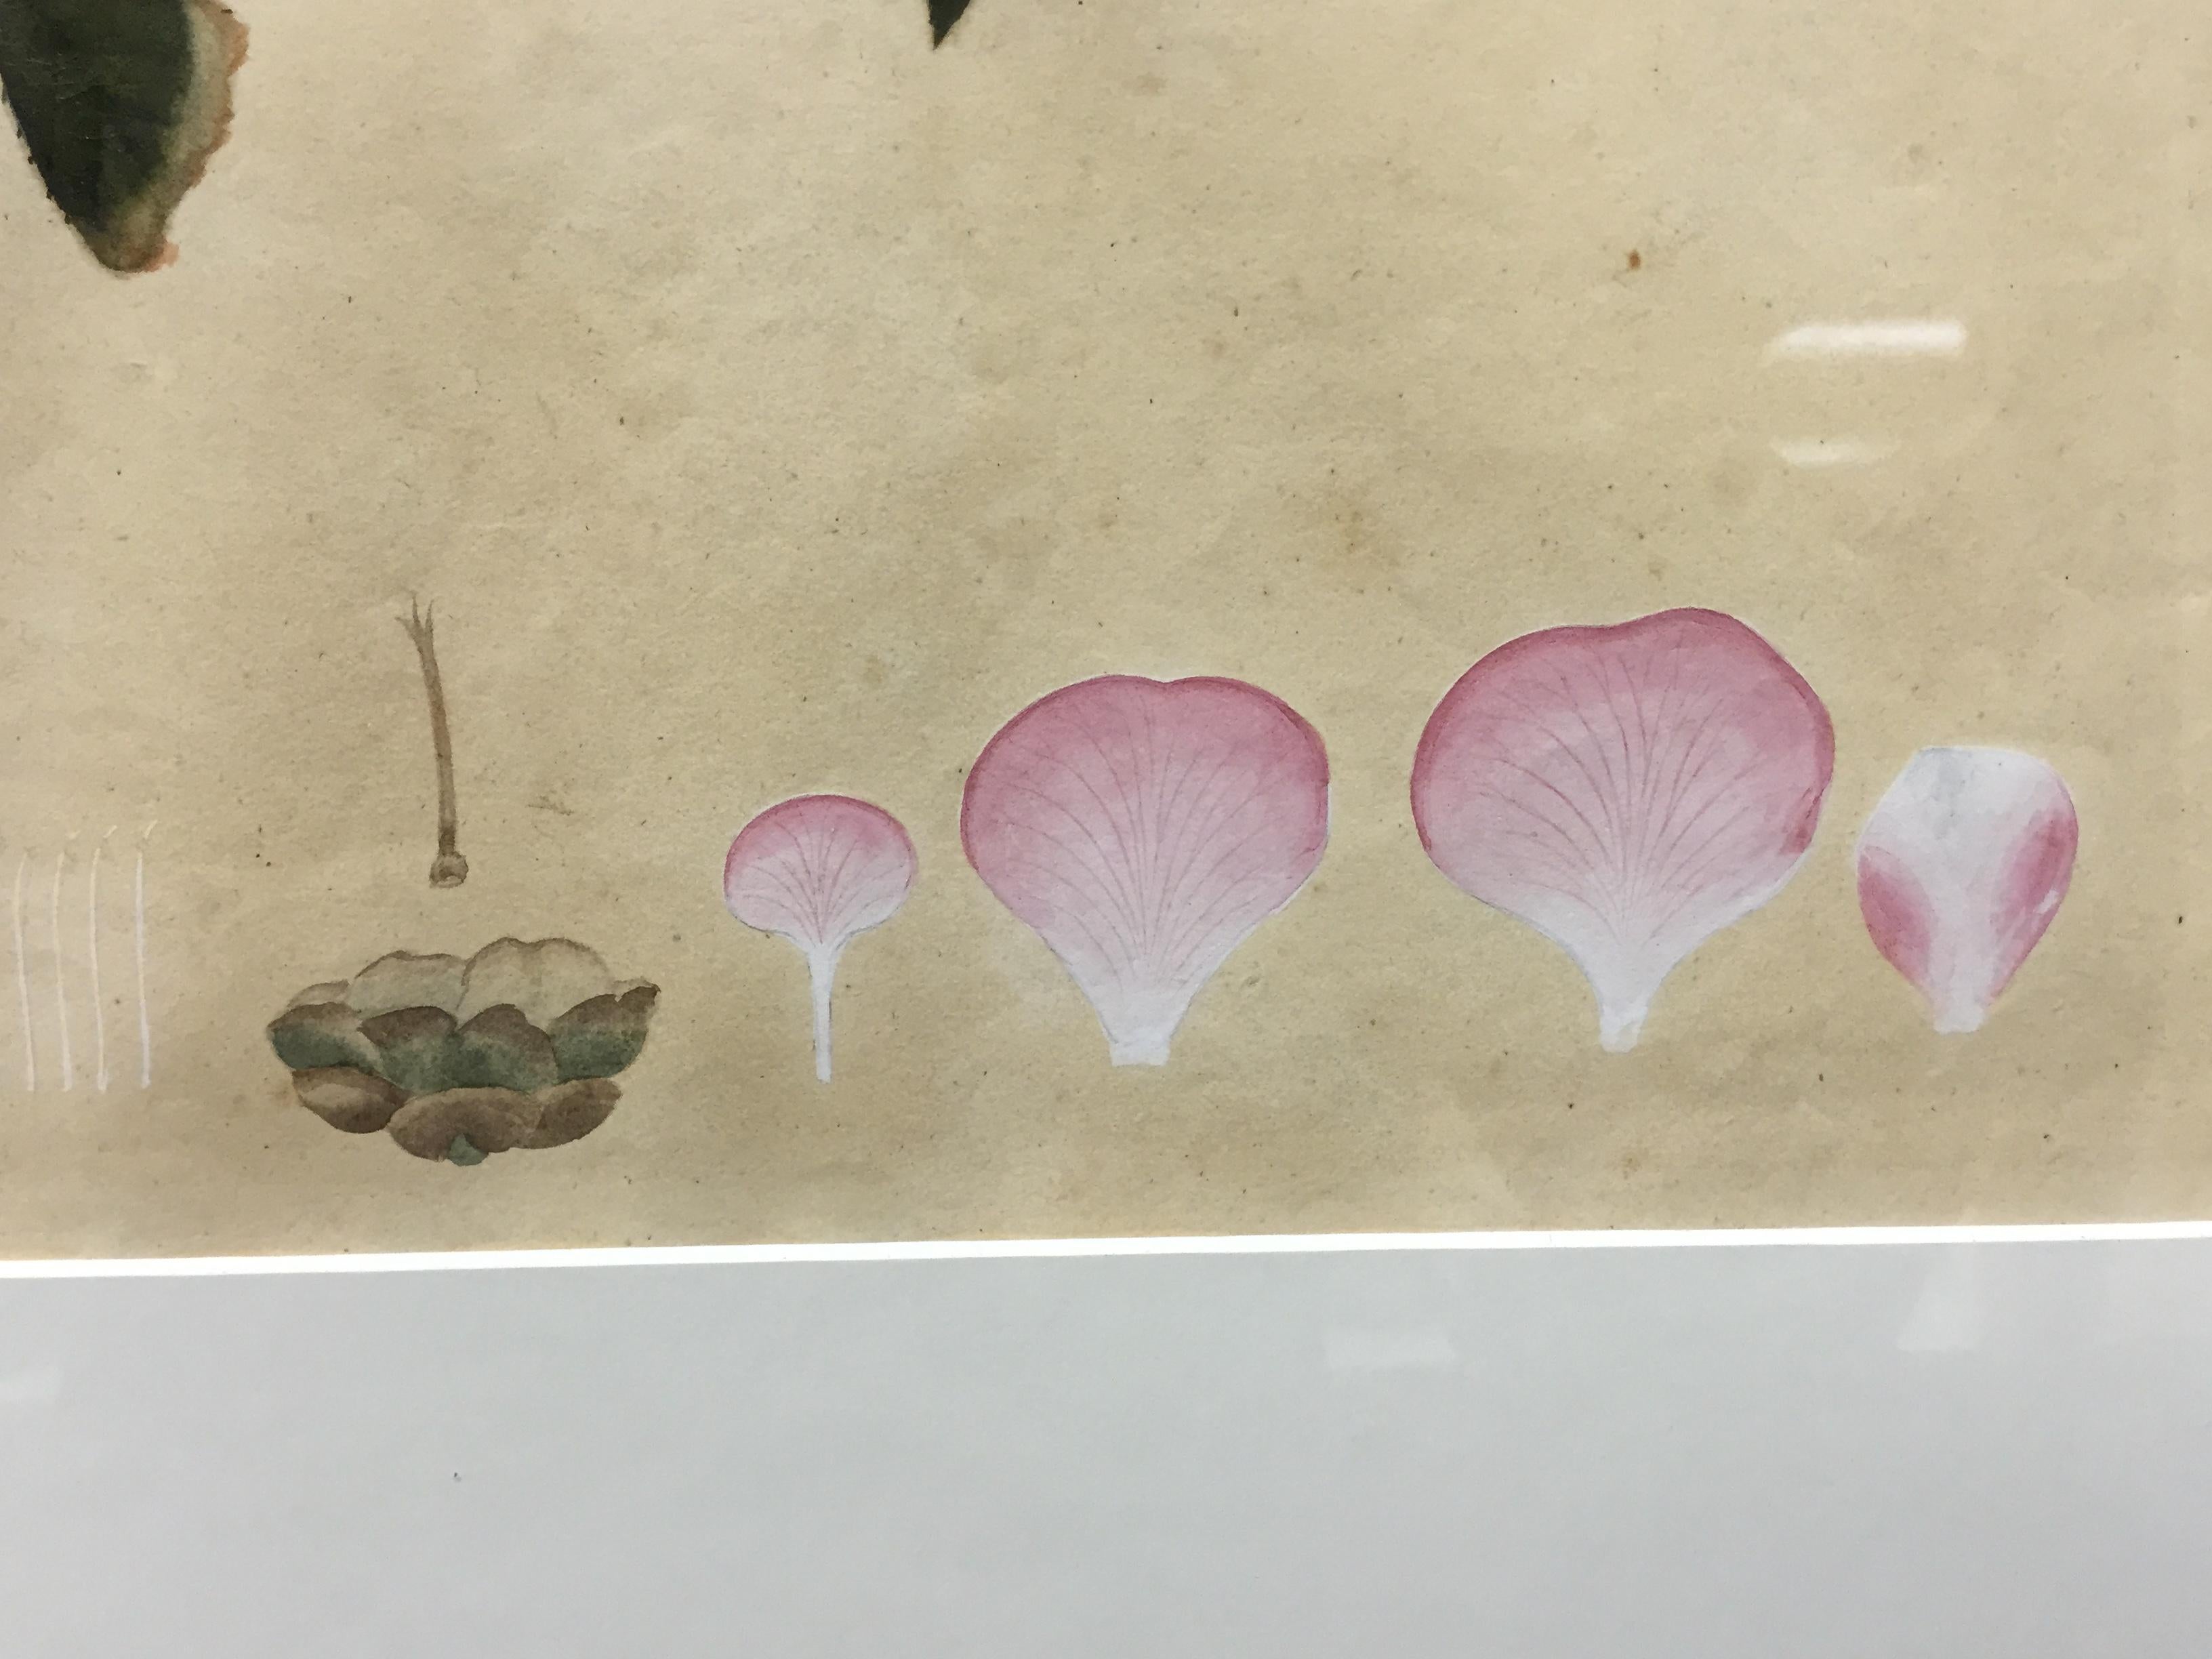 Belle aquarelle florale chinoise originale sur papier de riz représentant le 'Peach Red Camellia'.

Taille de l'image : 14 